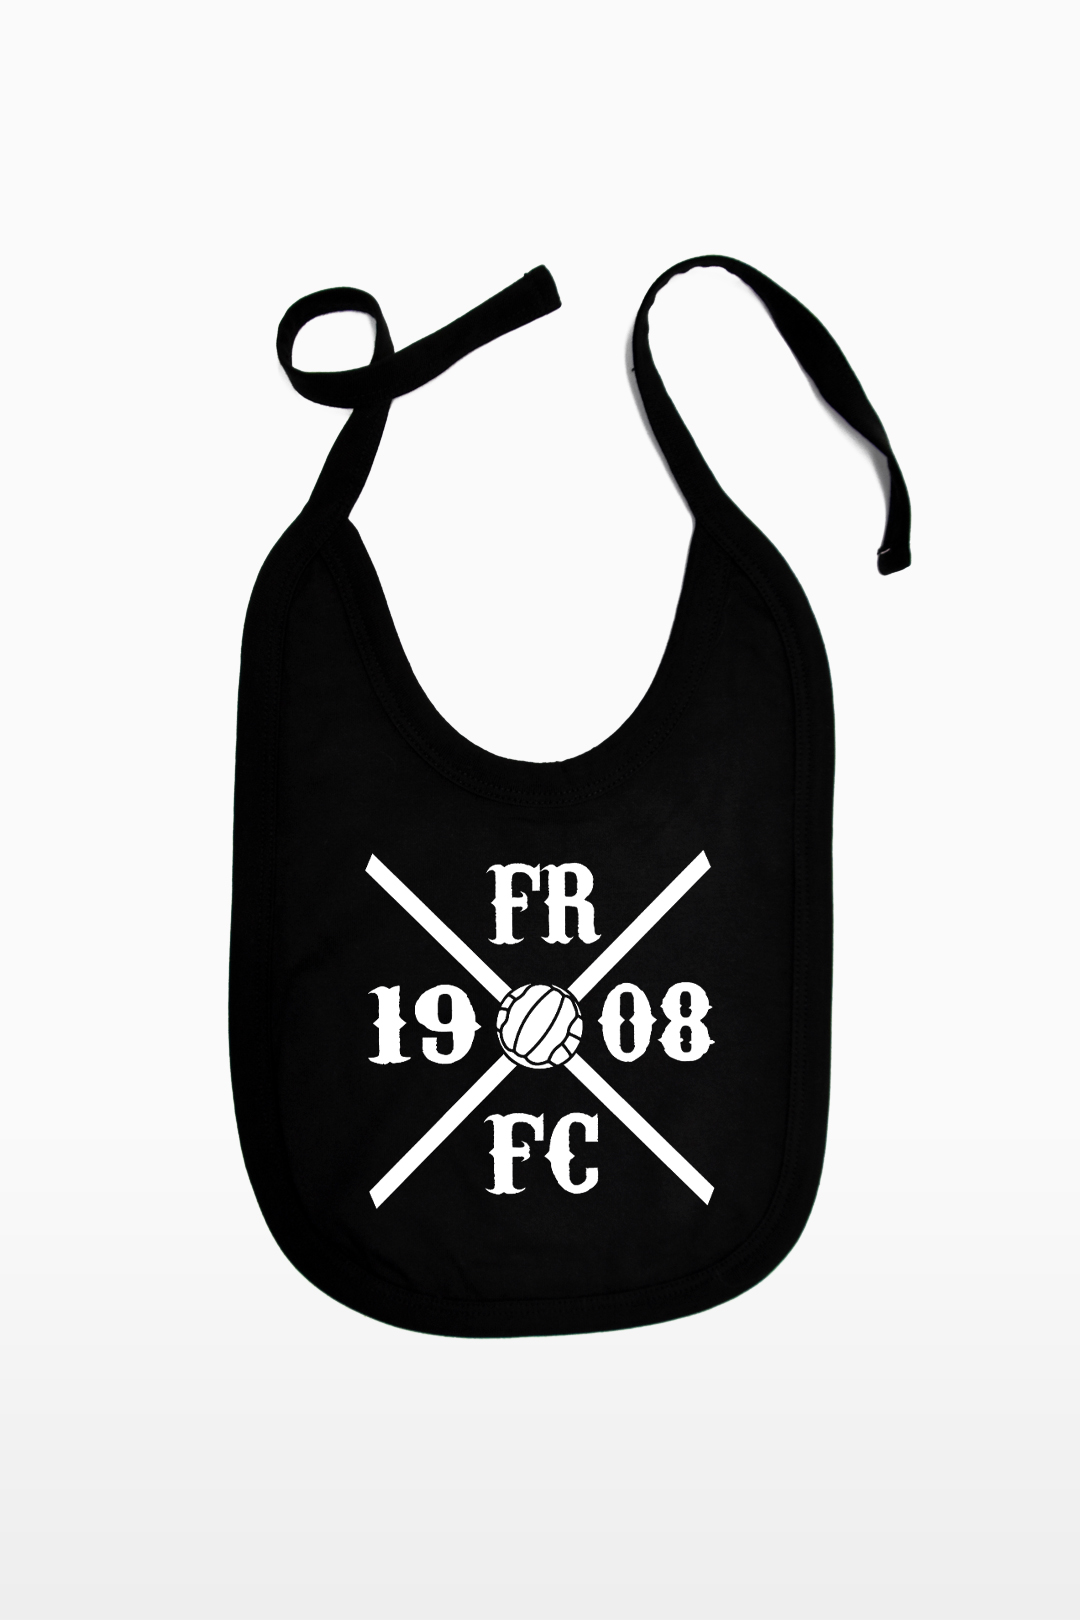 FRFC1908 Slabbetje - Kruislogo - FRFC1908.nl Feyenoord